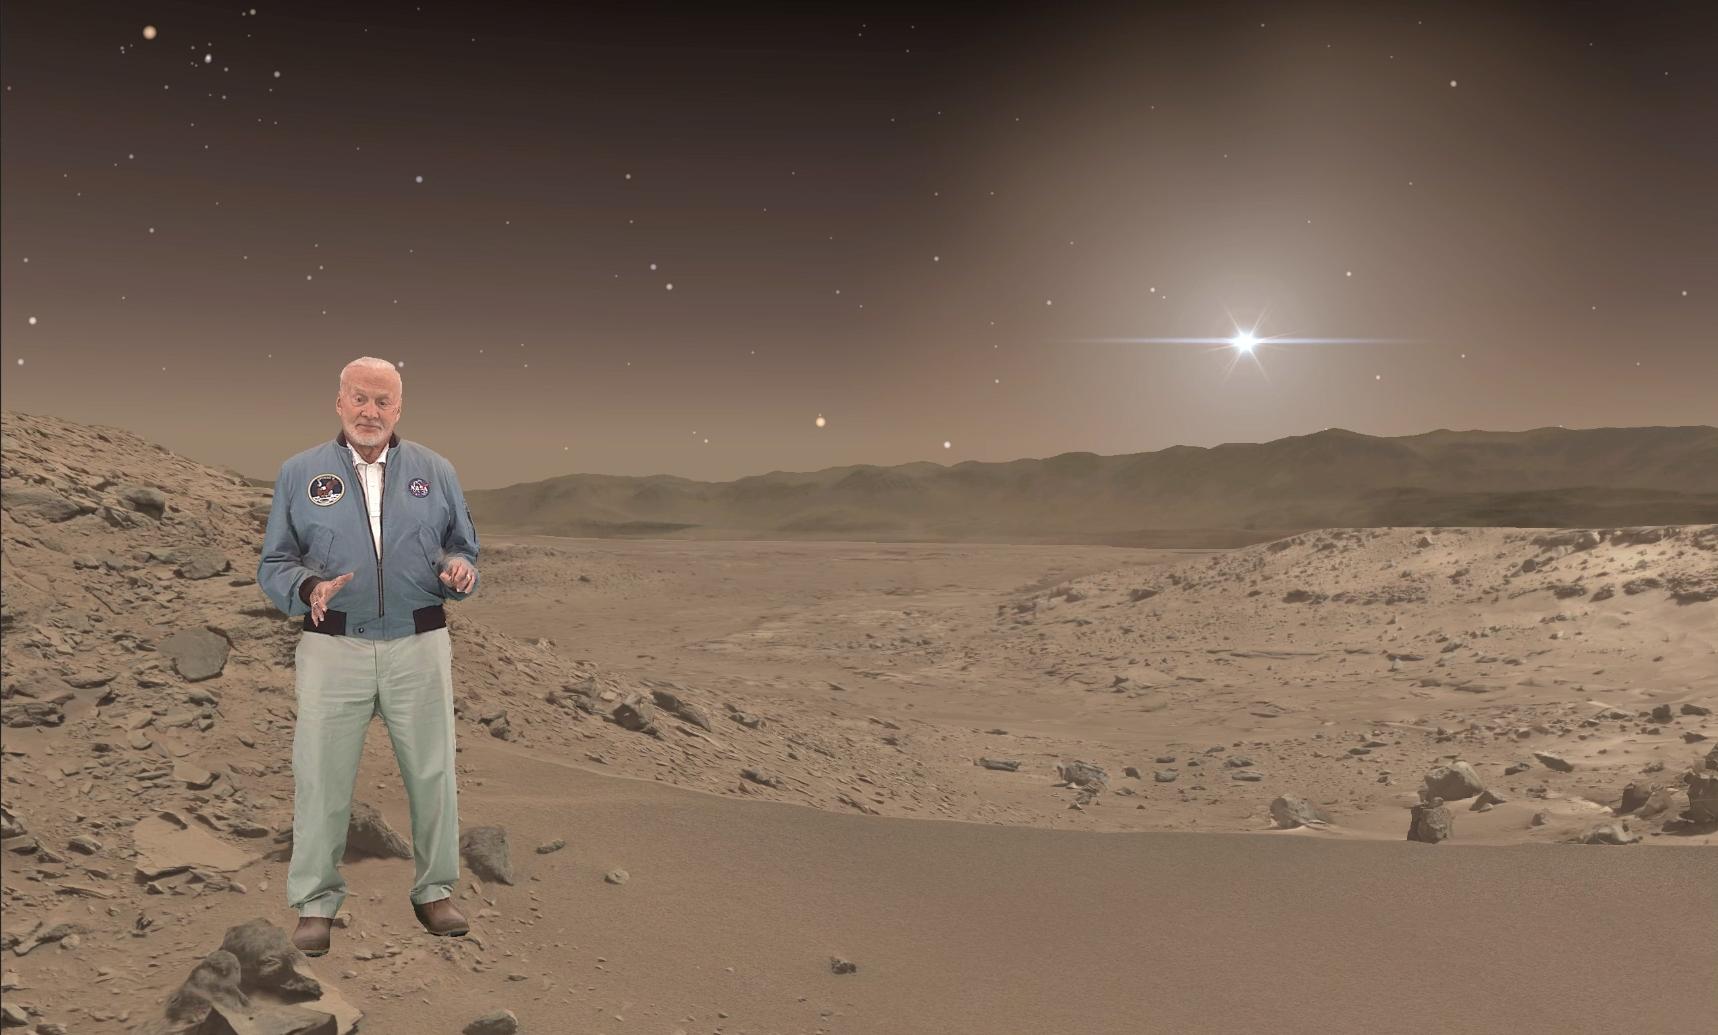 New NASA Exhibit Lets You Virtually Tour Mars With Buzz Aldrin